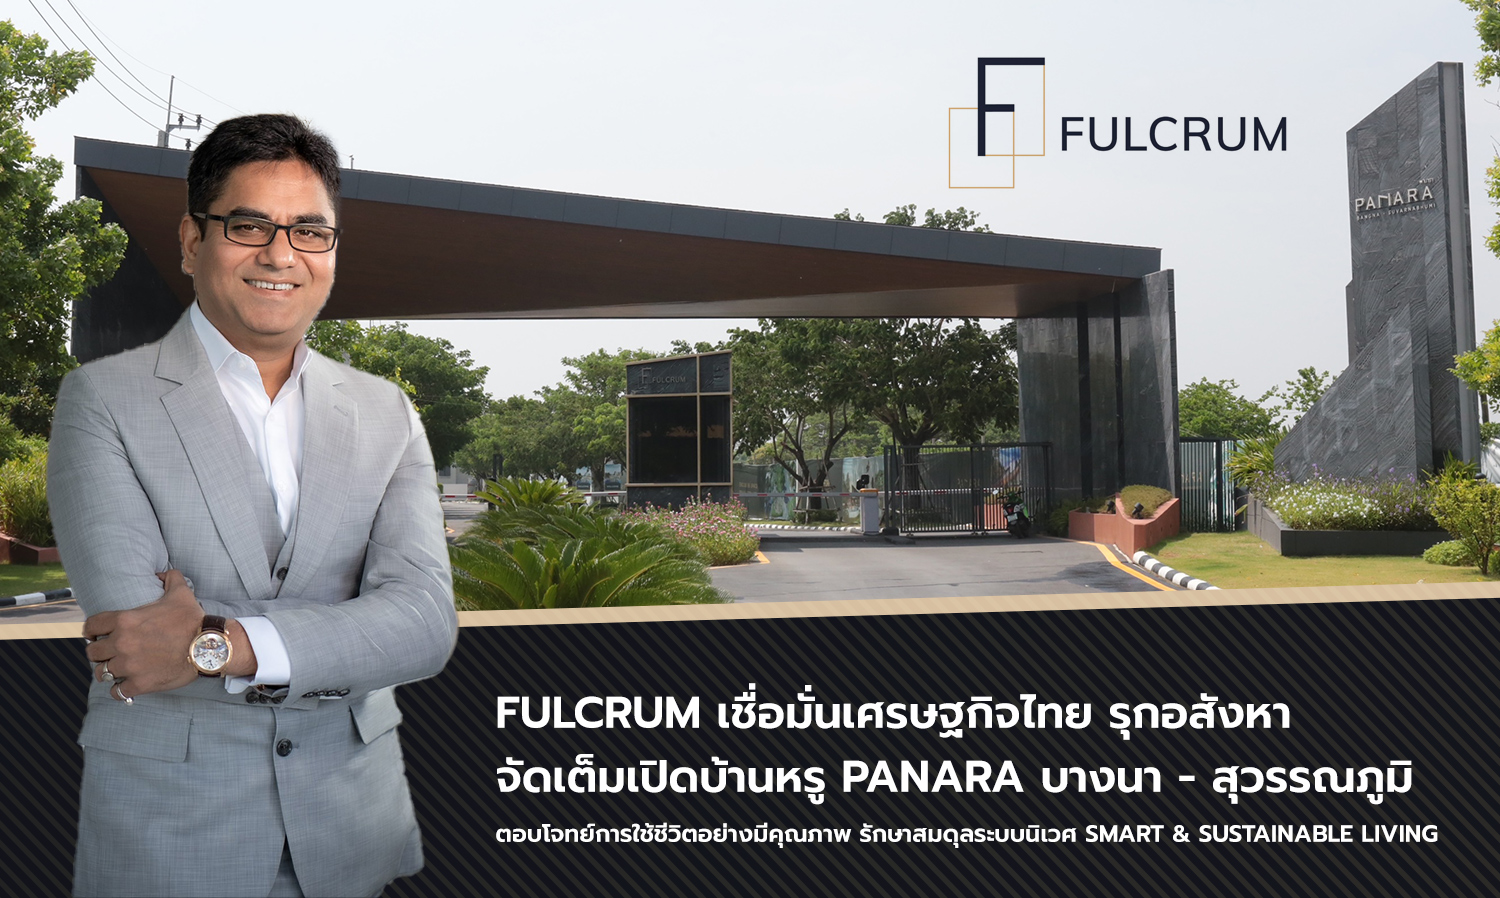 Fulcrum เชื่อมั่นเศรษฐกิจไทย รุกอสังหา จัดเต็มเปิดบ้านหรู PANARA บางนา - สุวรรณภูมิ  ตอบโจทย์การใช้ชีวิตอย่างมีคุณภาพ รักษาสมดุลระบบนิเวศ Smart & Sustainable Living